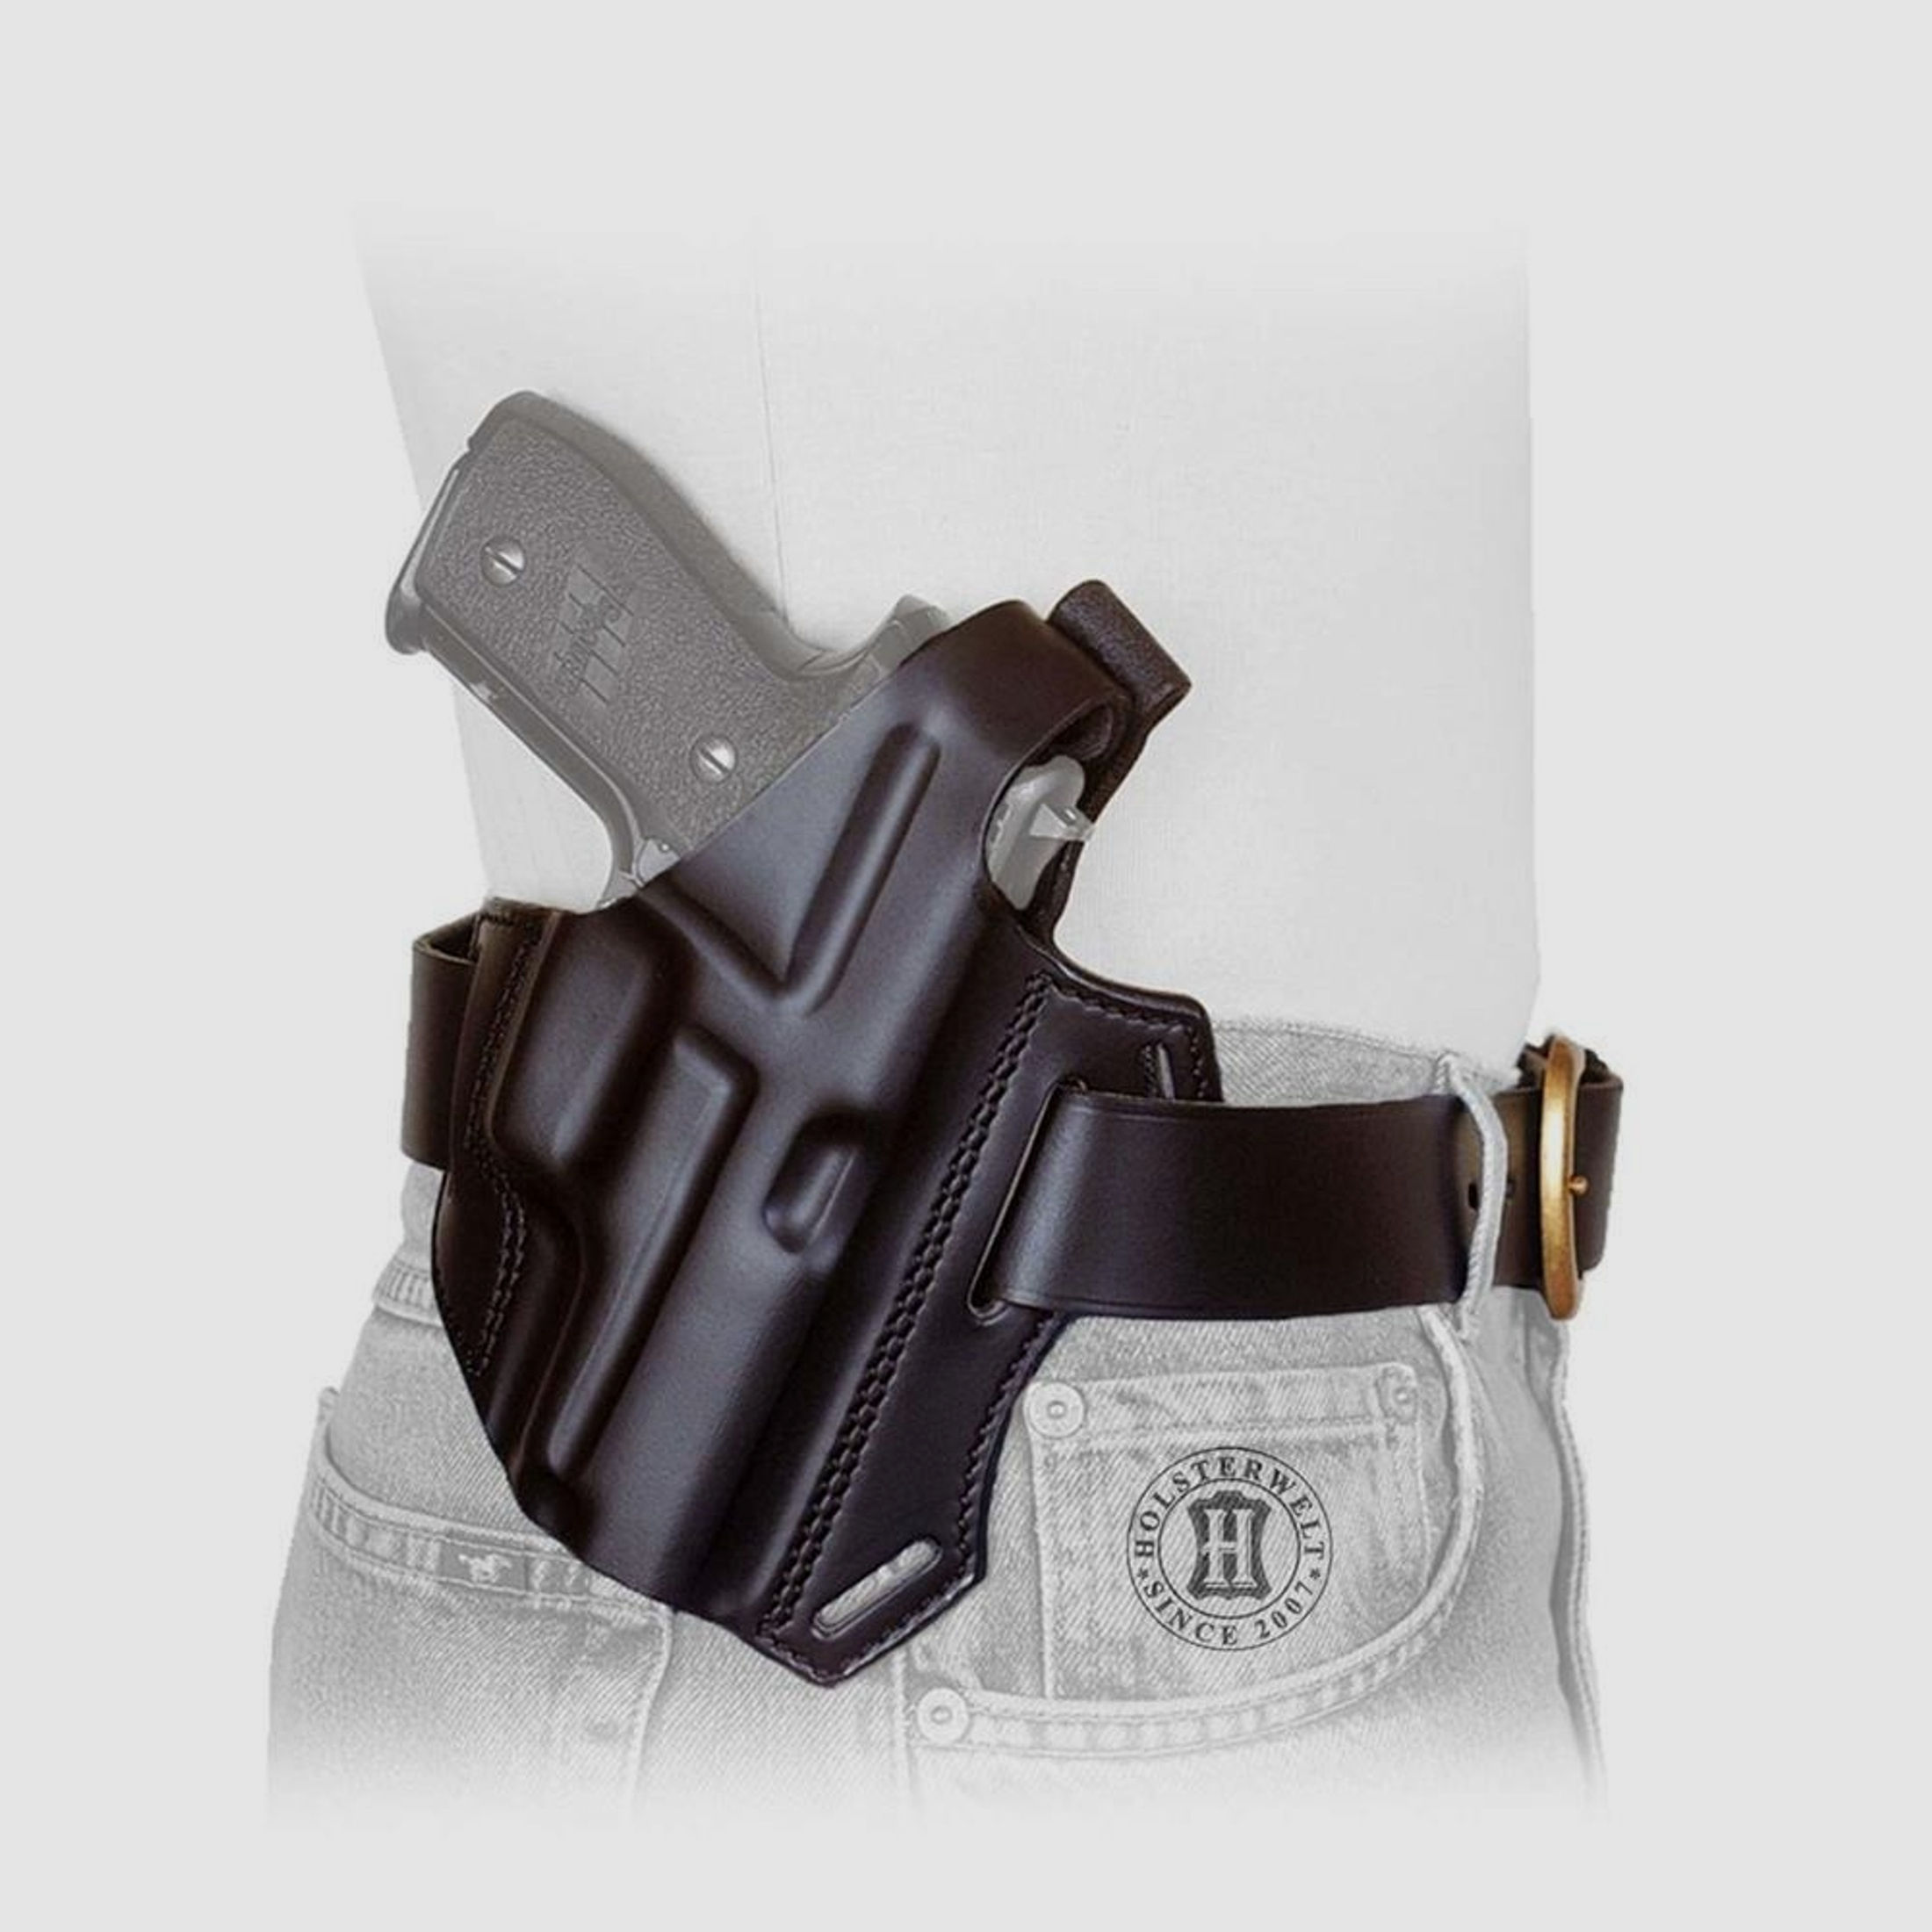 Gürtelholster / Schulterholster MULTI VARIO Glock 26/27/39/28/33-Schwarz-Rechtshänder